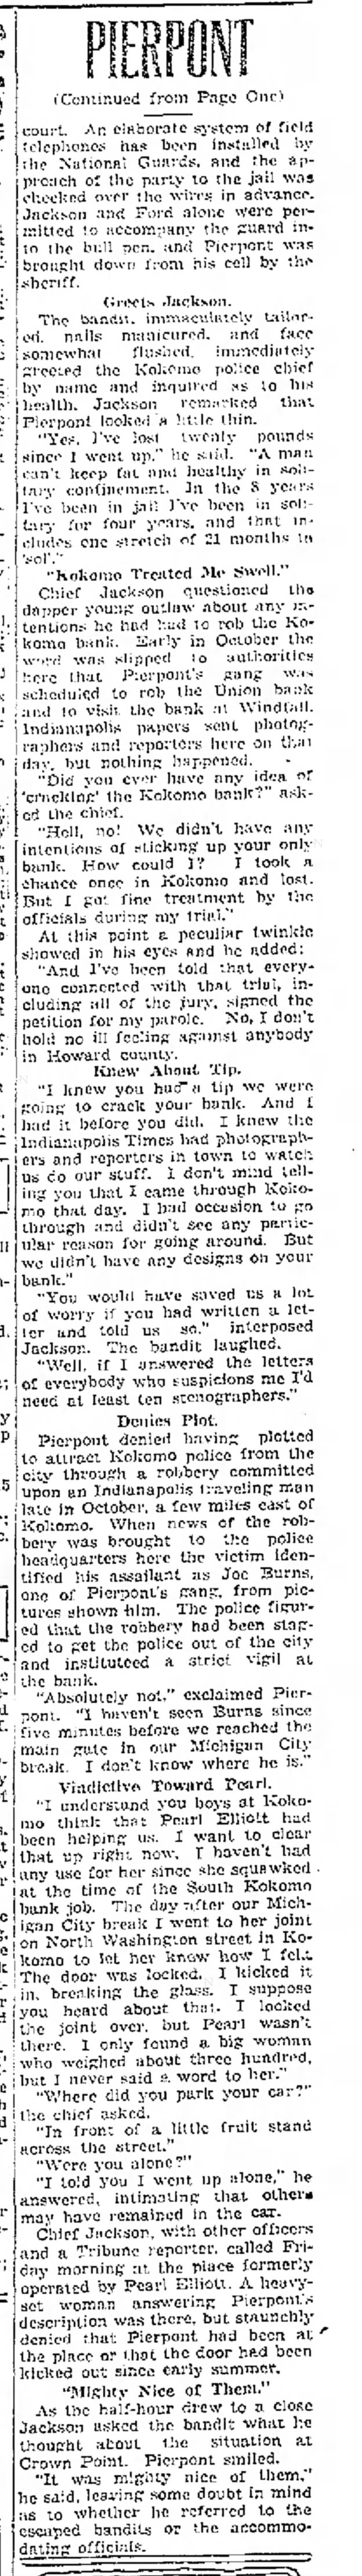 Pierpont Interview p.2 9 Mar 1934